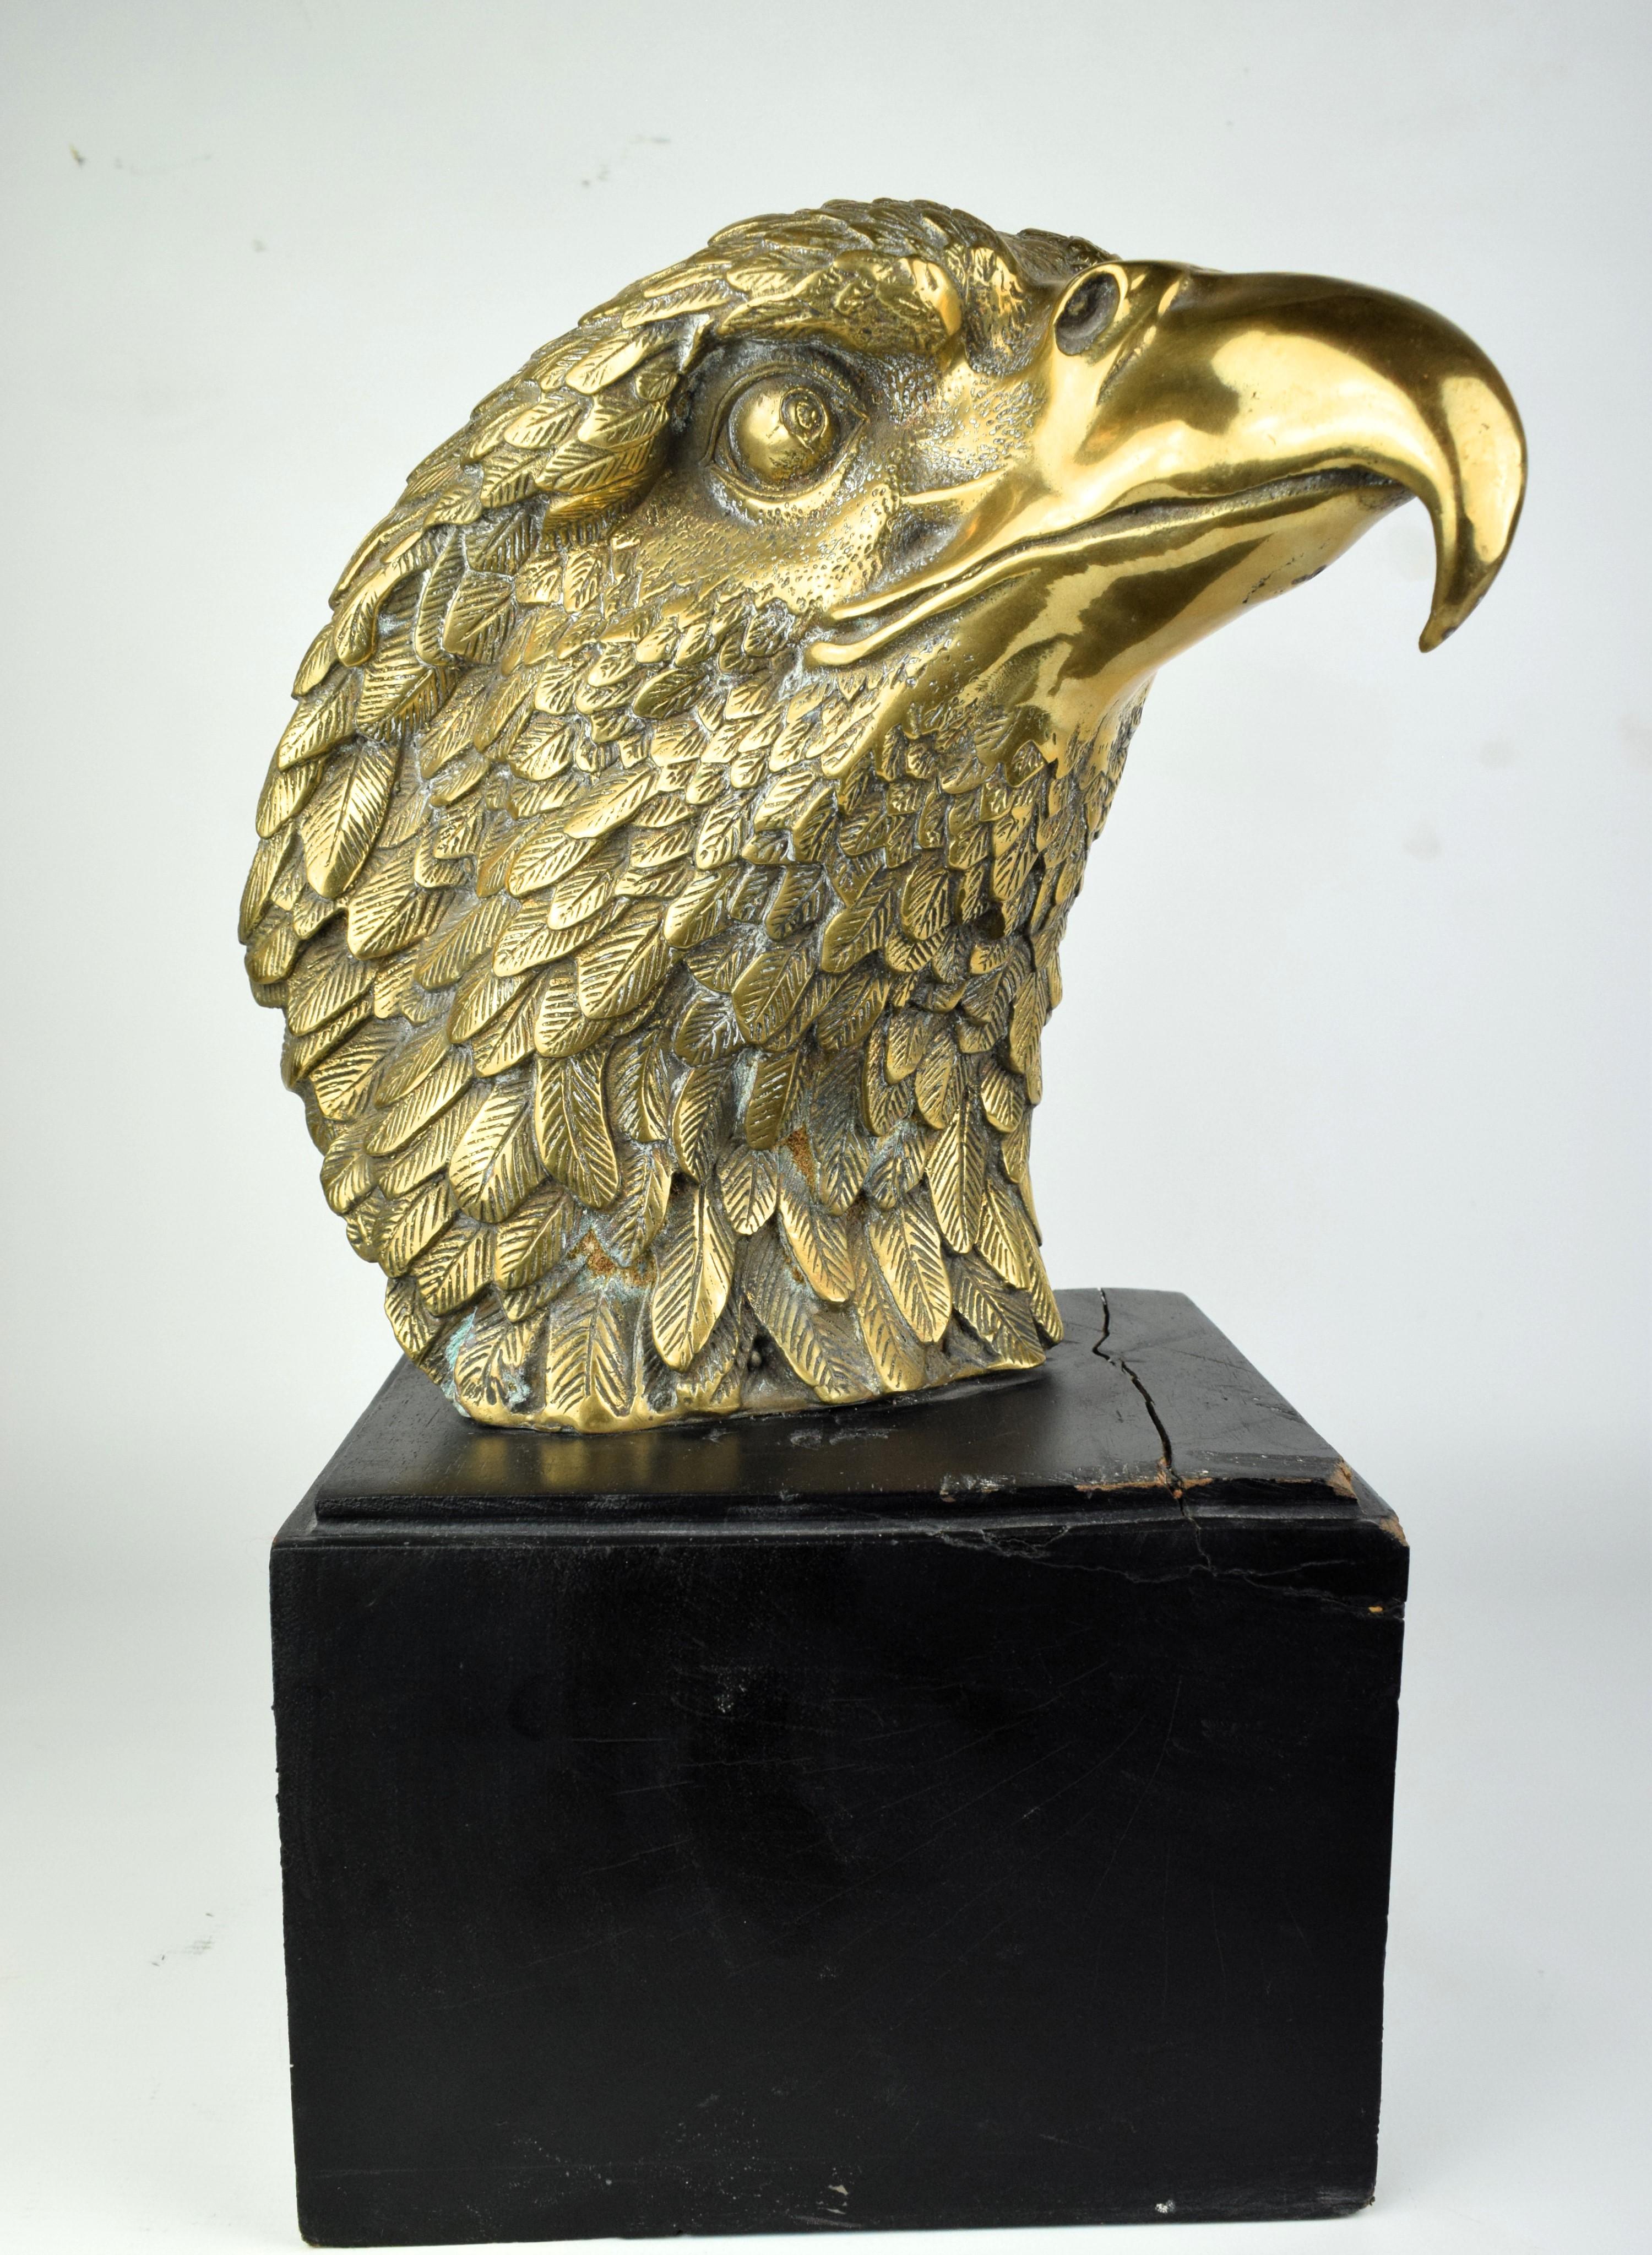 Ce buste d'aigle en laiton est une étonnante sculpture décorative de la tête d'un aigle, réalisée en laiton. L'aigle est un symbole de force, de liberté et de majesté, ce qui en fait un sujet populaire pour les représentations artistiques. Un buste